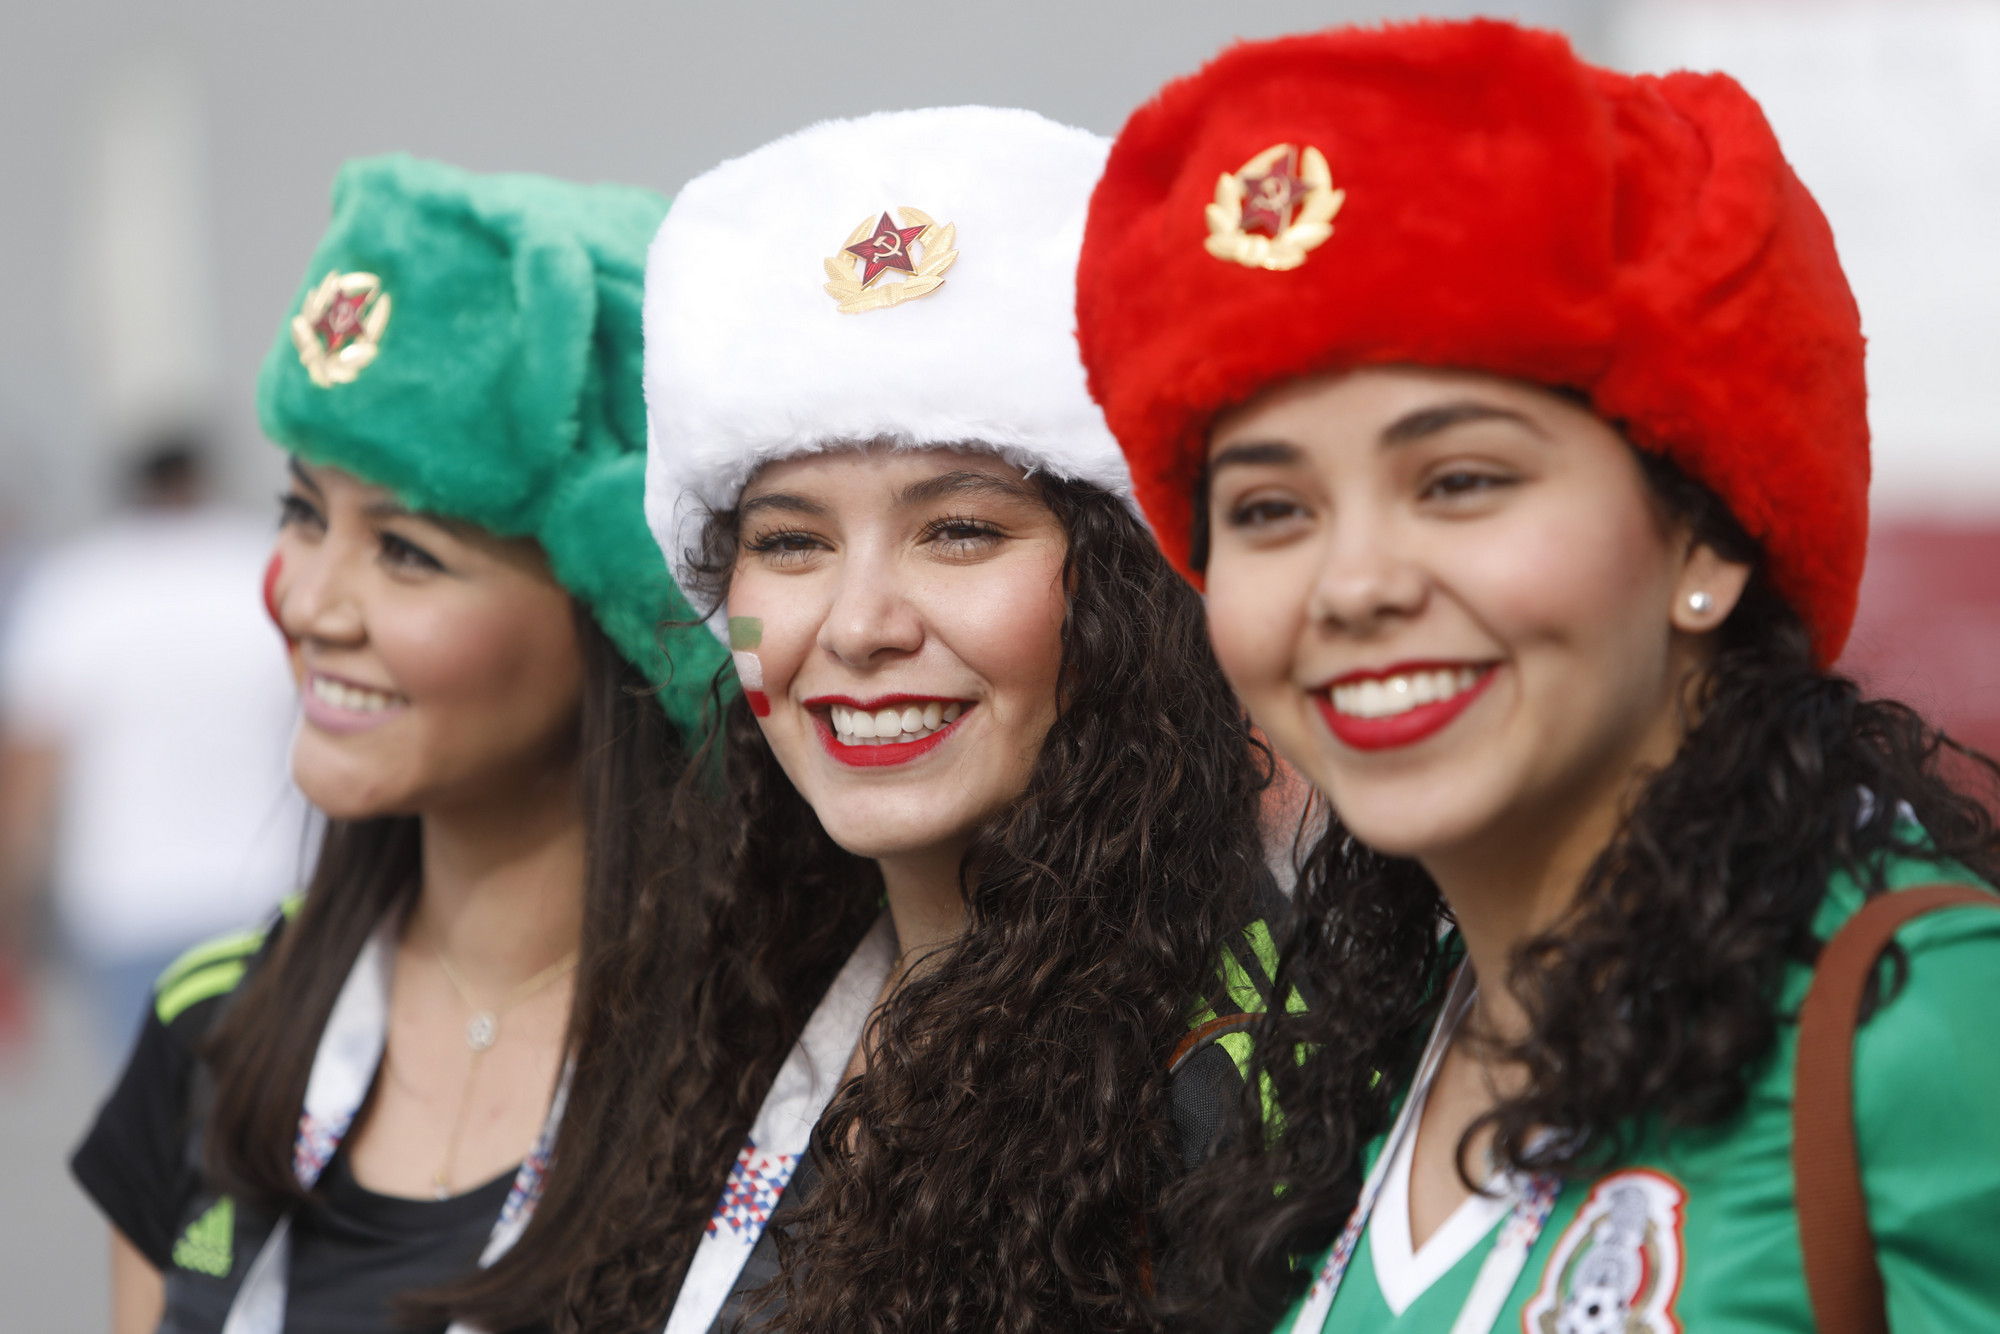 Шапка-ушанка &mdash; обязательный атрибут болельщиков на всех турнирах в России. Мексиканские болельщицы приобрели шапки в цветах национального флага